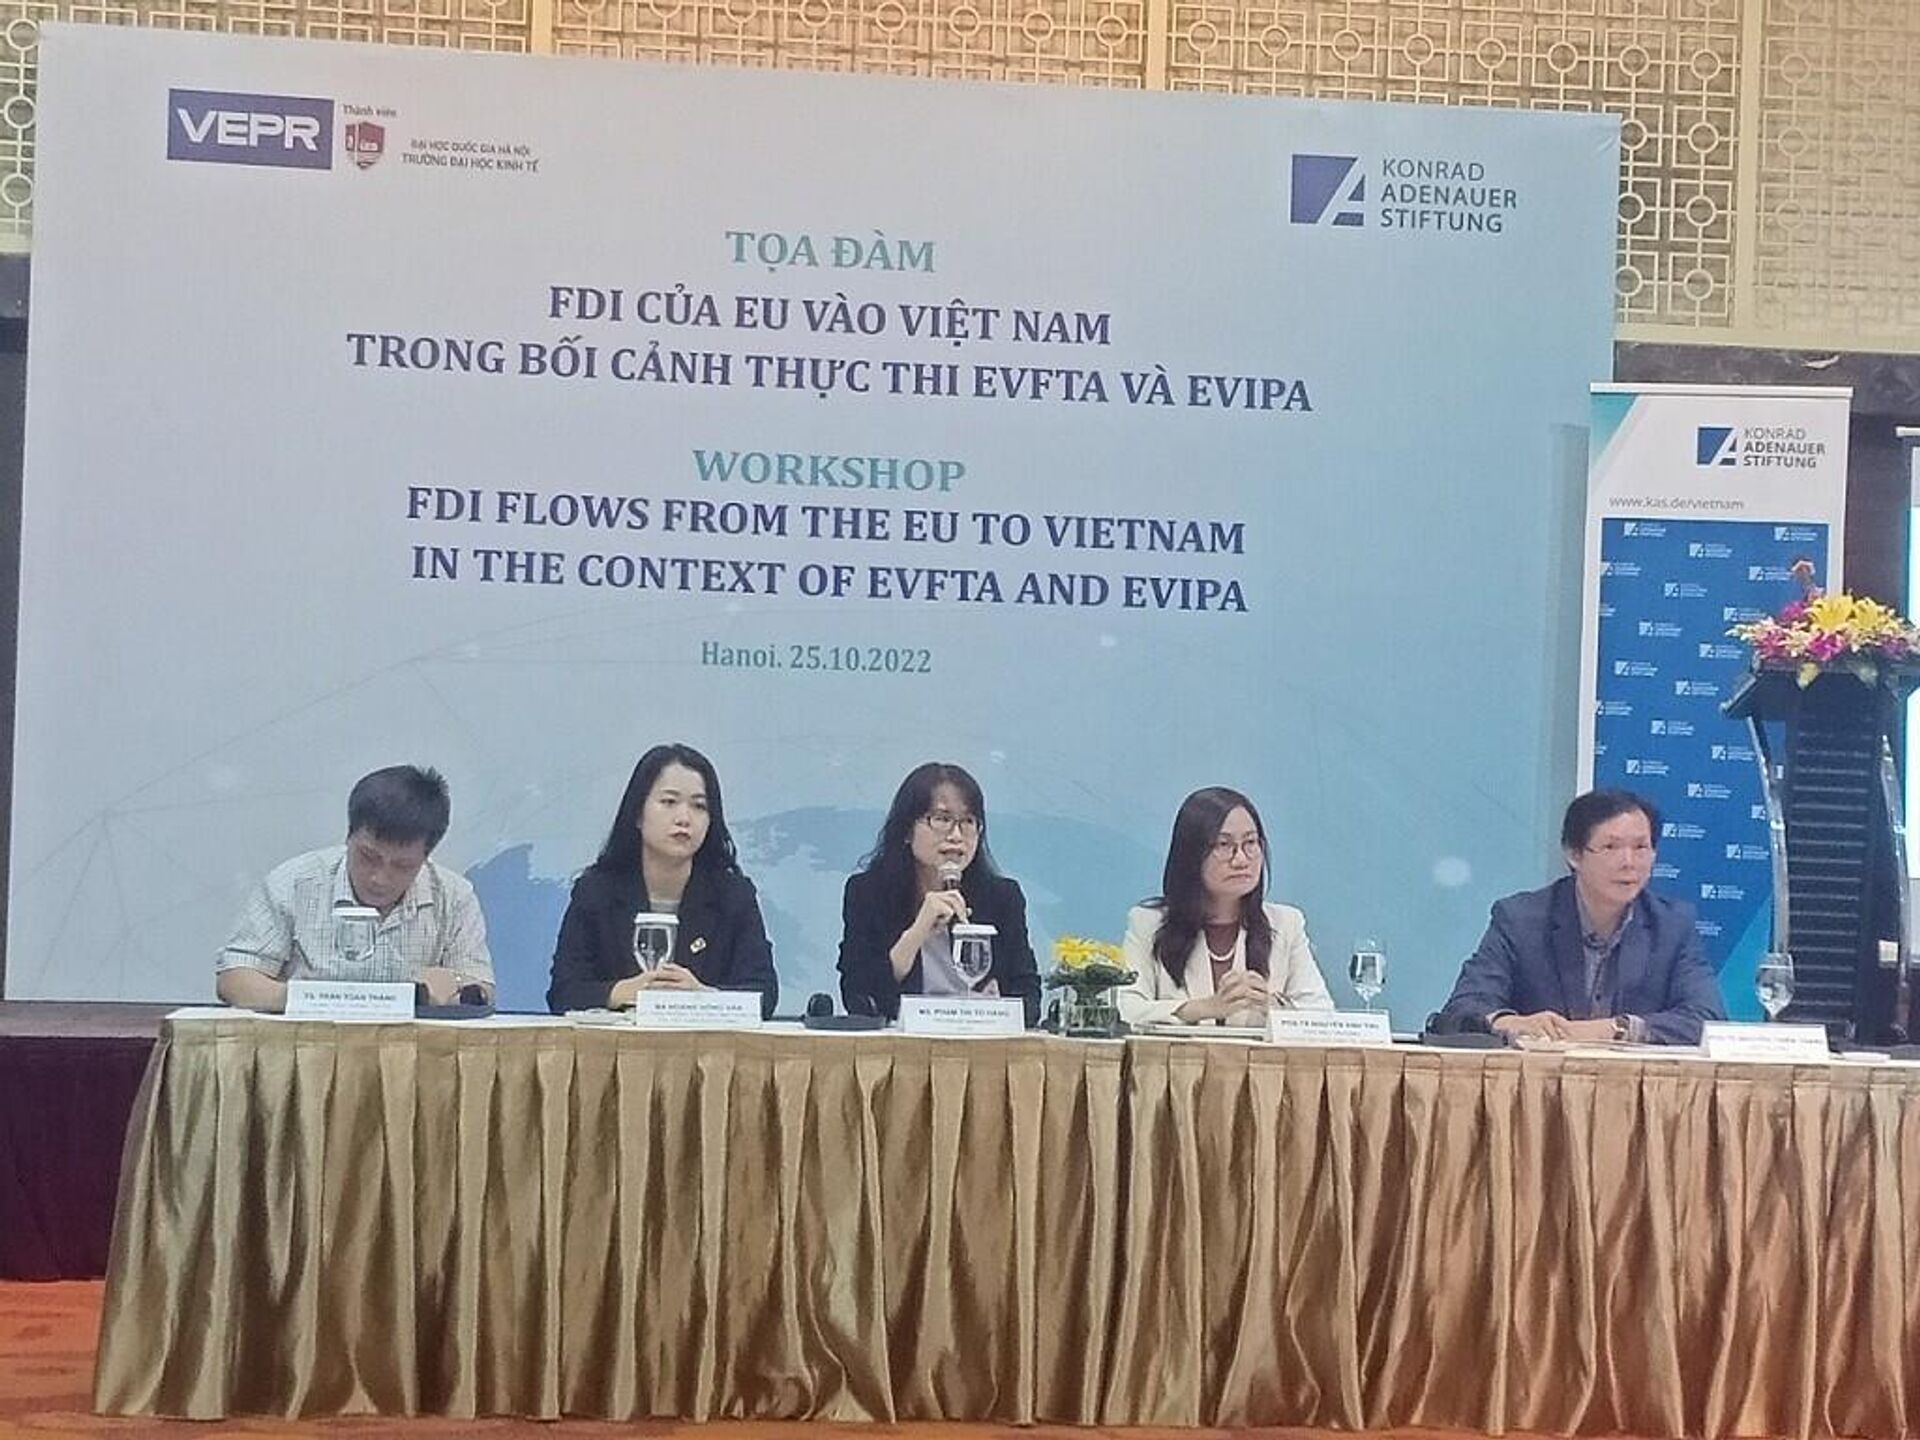 Các đại biểu chủ trì hội thảo đầu tư giữa Việt Nam và EU trong khuôn khổ việc phê chuẩn Hiệp định Thương mại tự do Việt Nam - Liên minh Châu Âu (EVFTA) và Hiệp định Bảo hộ đầu tư lẫn nhau giữa Việt Nam và Liên minh Châu Âu (EVIPA) - Sputnik Việt Nam, 1920, 25.10.2022